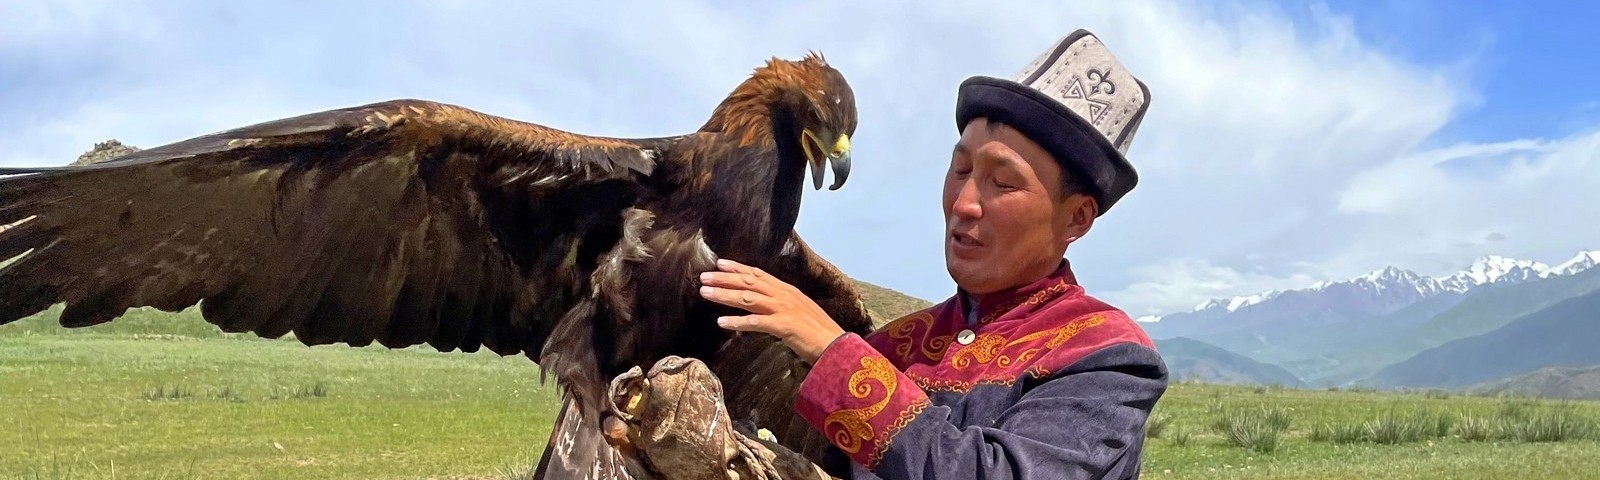 Poznaj niezwykłą kulturę i zwyczaje mieszkańców Kirgistanu